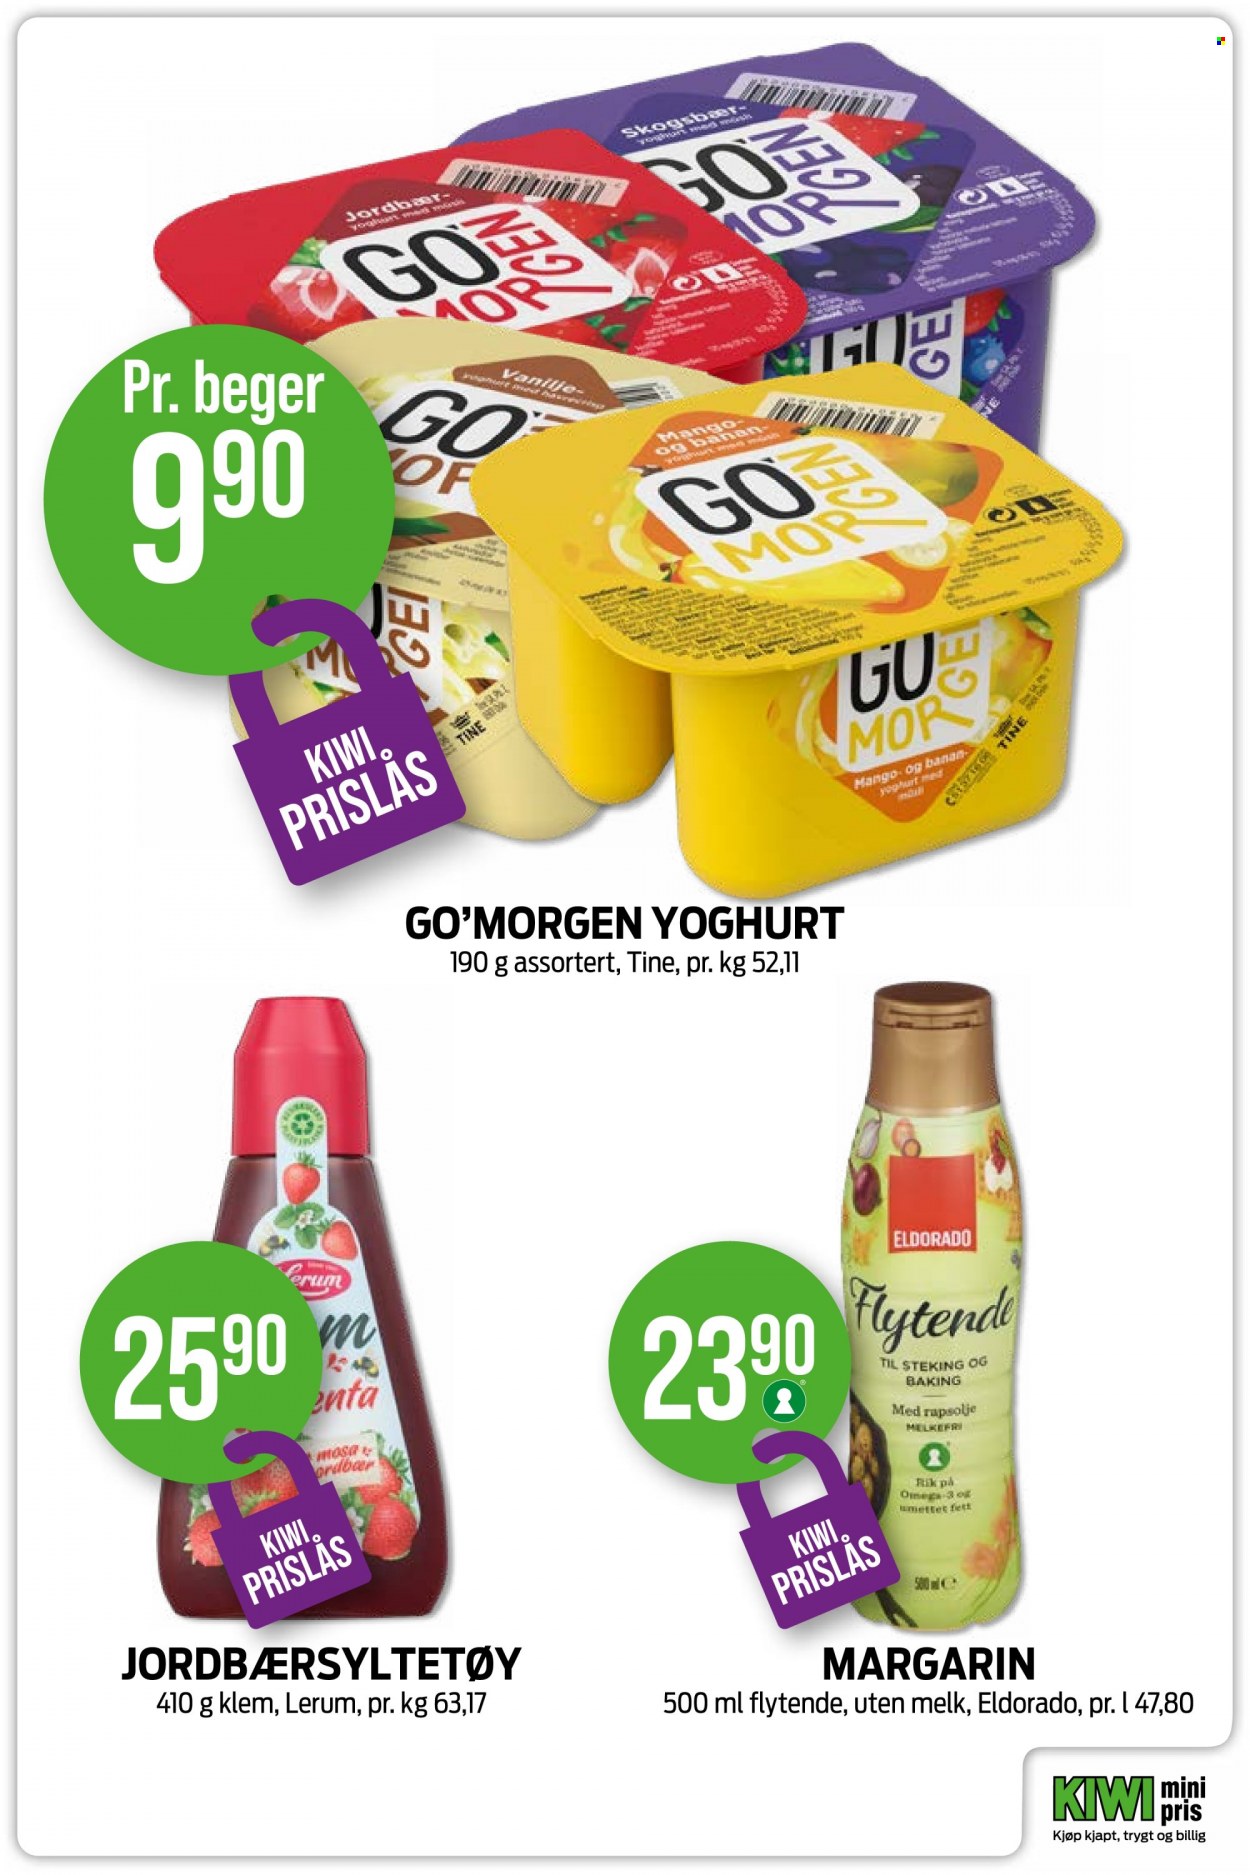 thumbnail - Kundeavis KIWI - Produkter fra tilbudsaviser - melk, margarin, jordbærsyltetøy. Side 5.